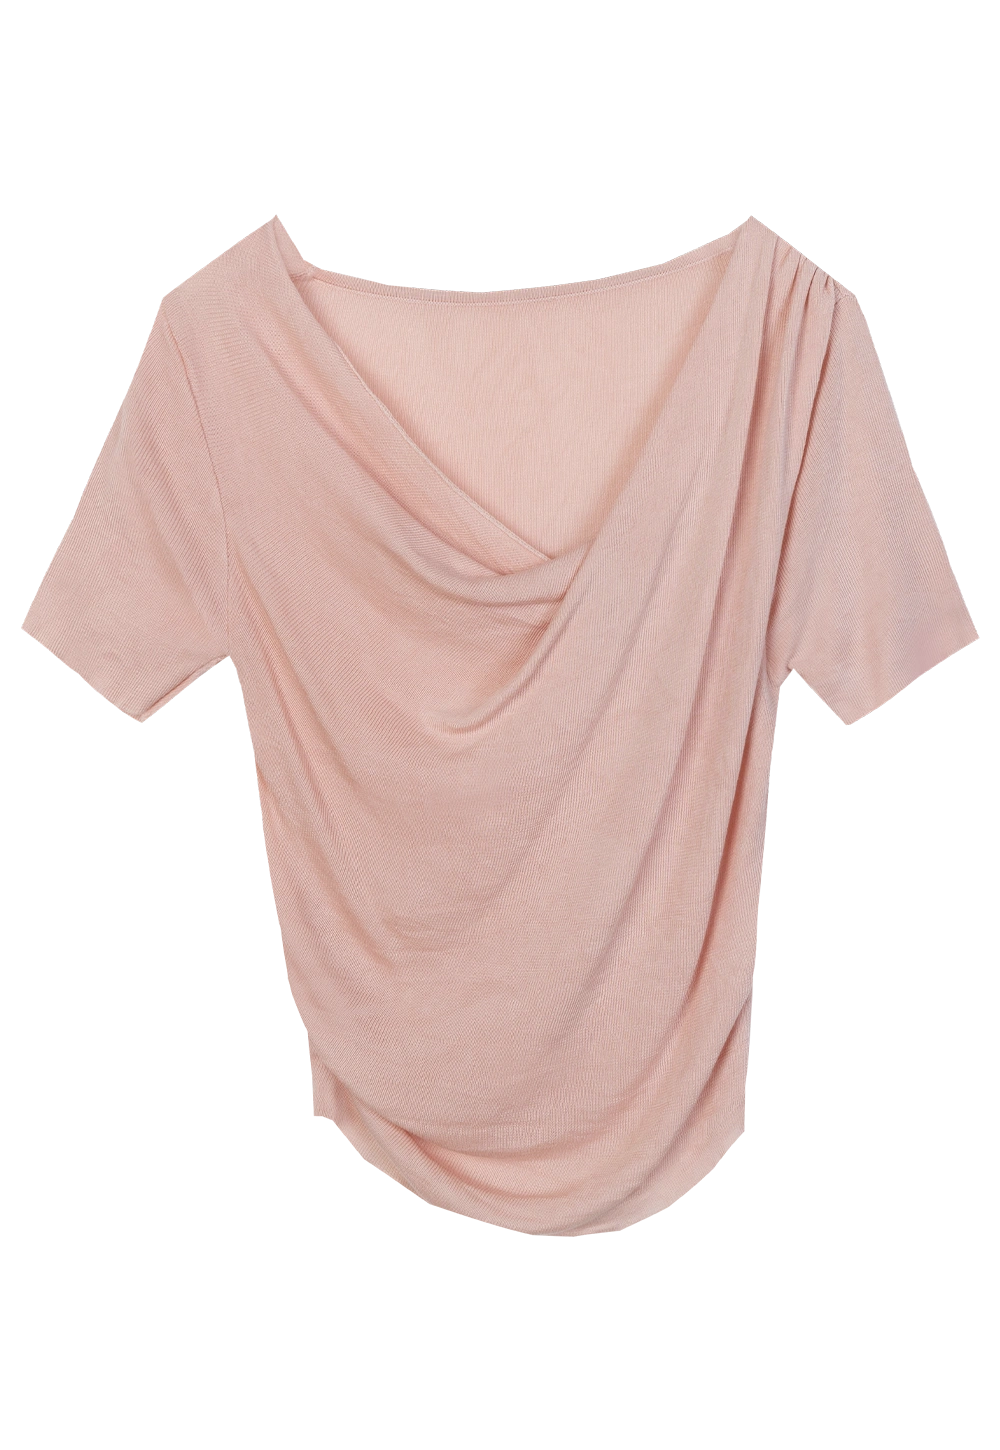 T-Shirt Berbalut Wanita - Garis Leher Tidak Simetri, Fabrik Lembut, Sesuai untuk Gaya Kasual Elegan